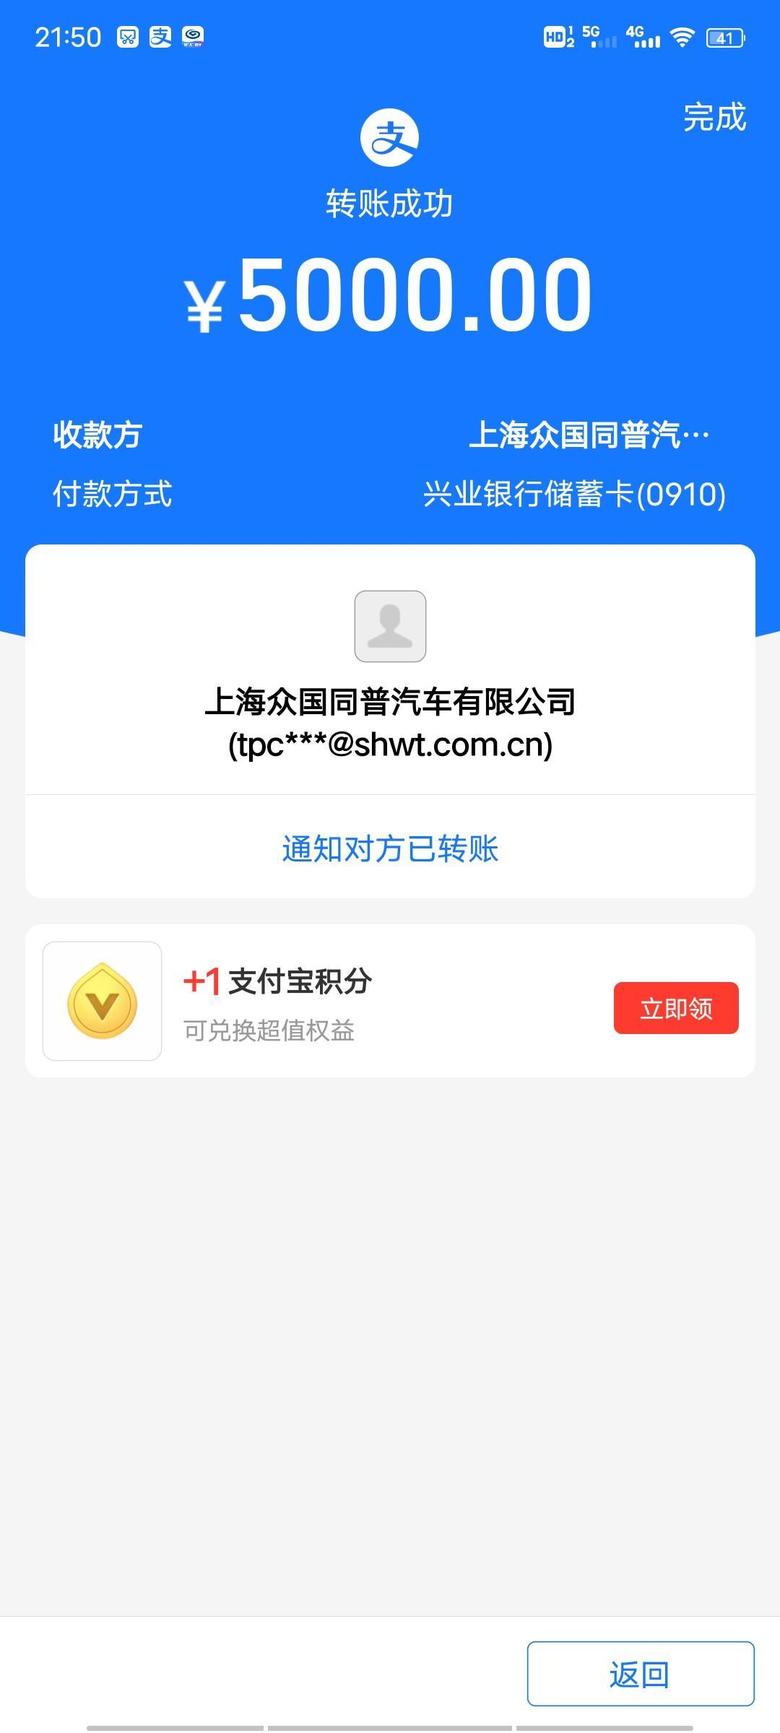 迈锐宝xl 销售是自己网上找的，上海的店，第一次买车，线上交的订金。谈的价格166700感觉挺合适就定了，希望一切顺利